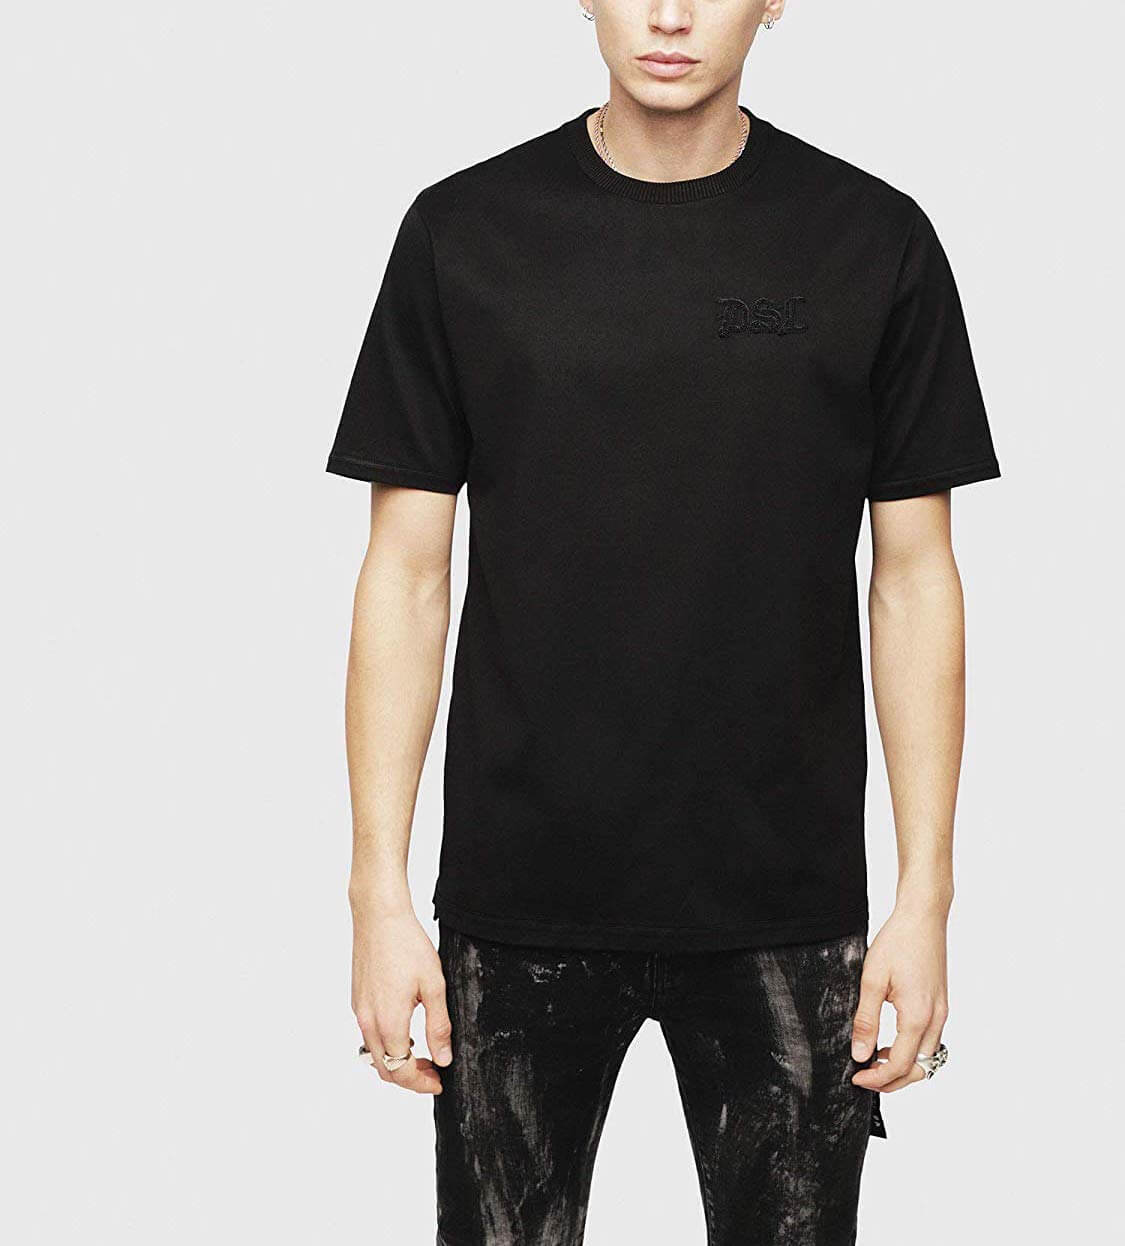 黒tシャツ コーデ特集 インナー使いでも高ポテンシャルを発揮するデキるやつ メンズファッションメディア Govgov 男前研究所